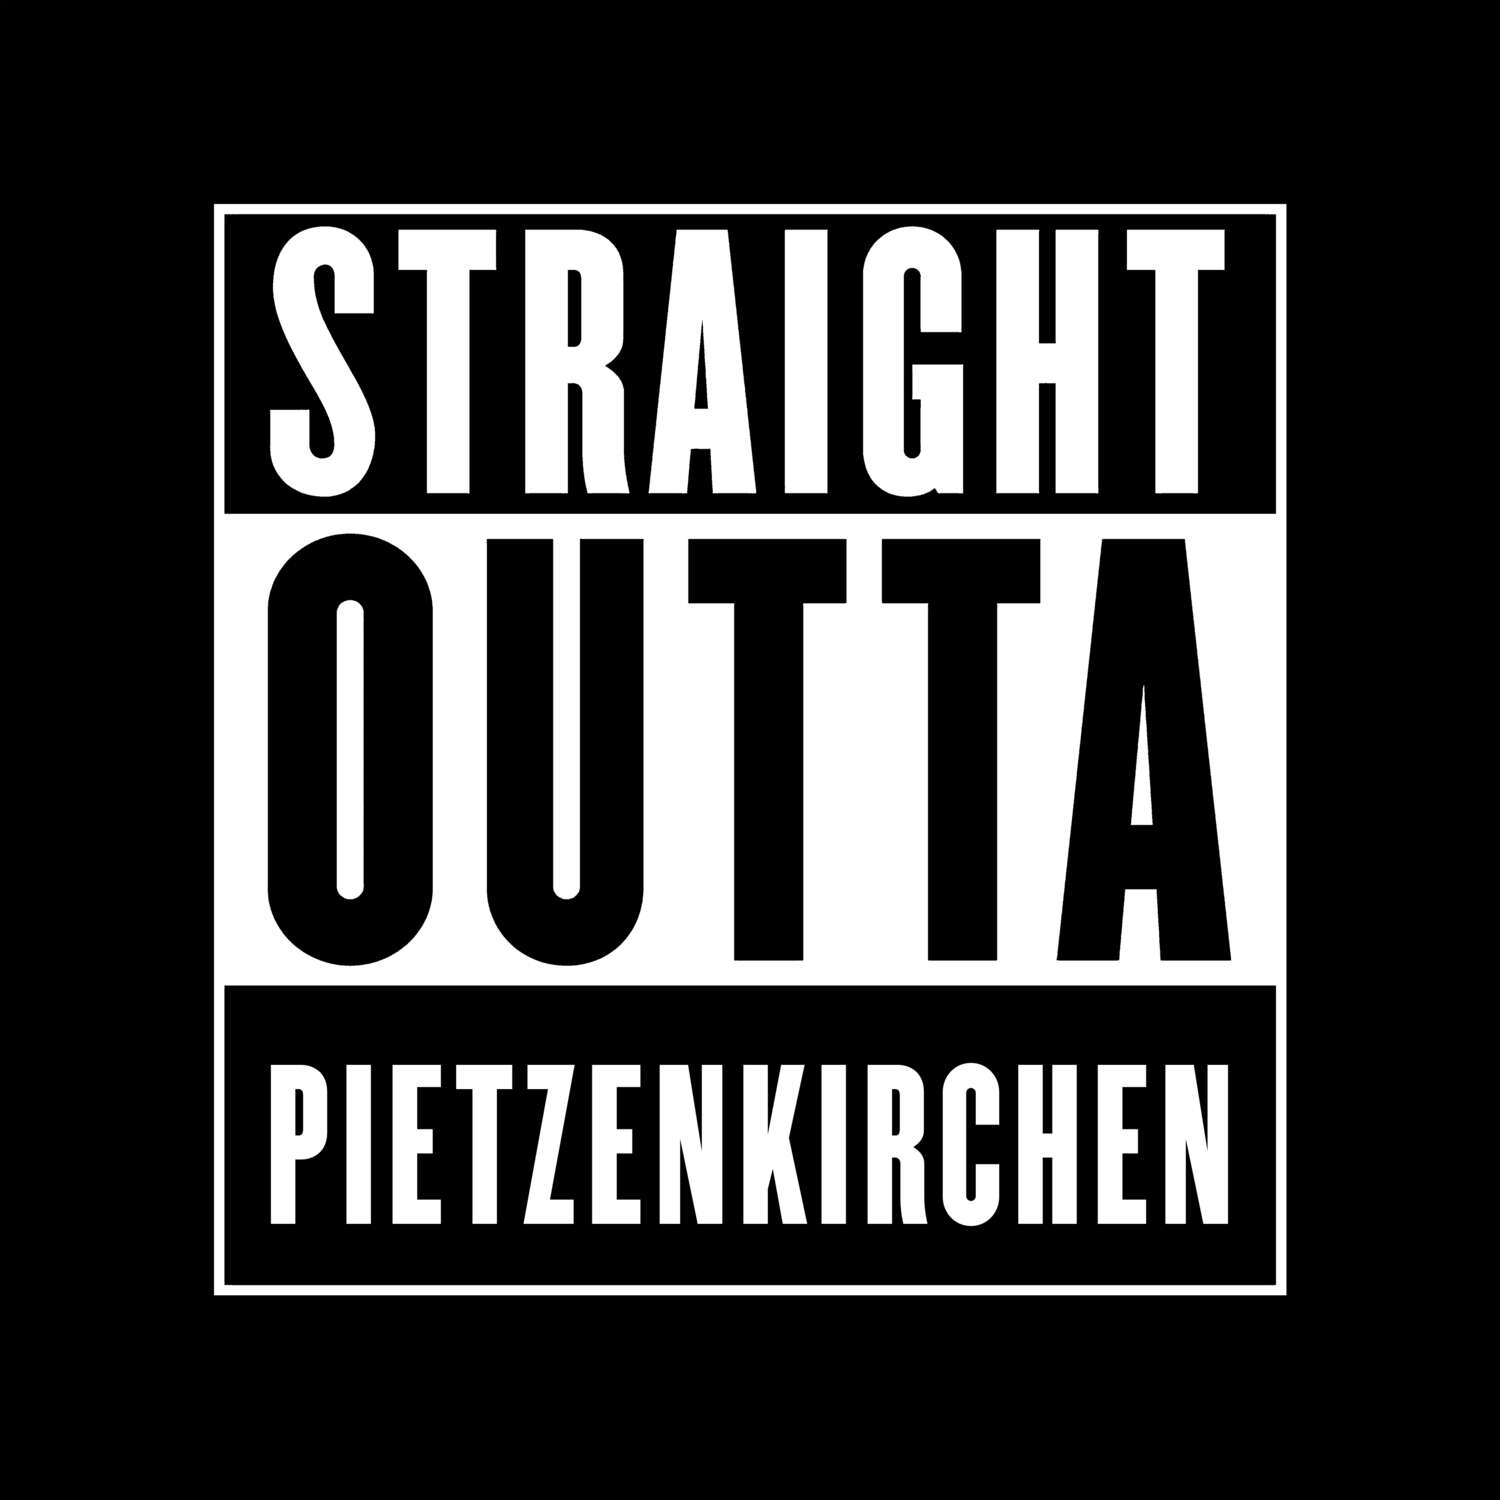 Pietzenkirchen T-Shirt »Straight Outta«